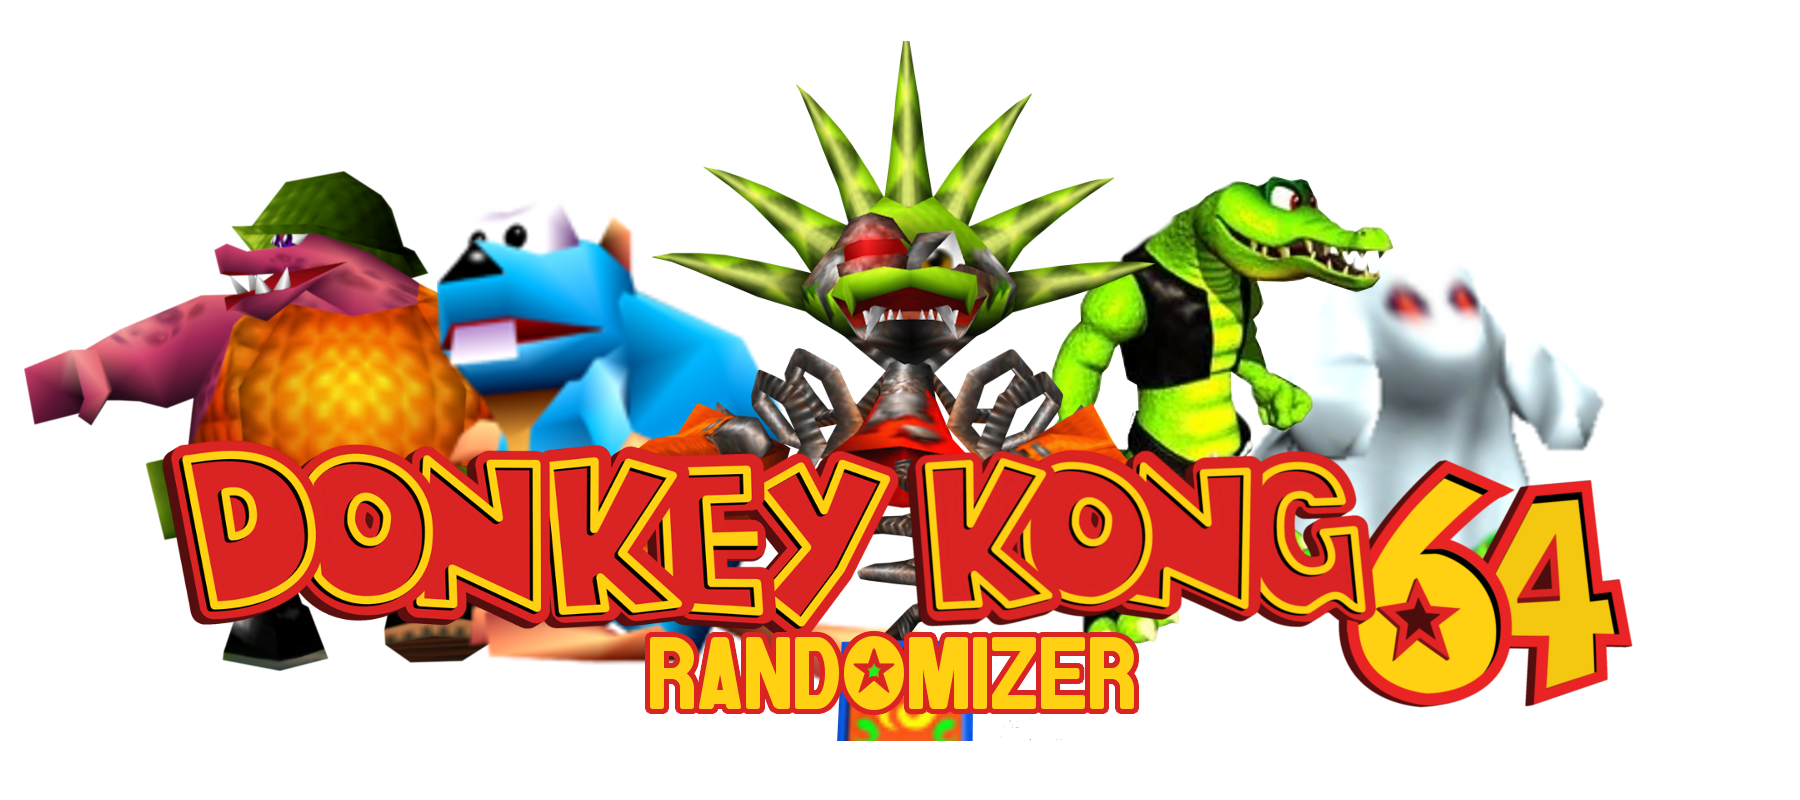 DK64-Randomizer